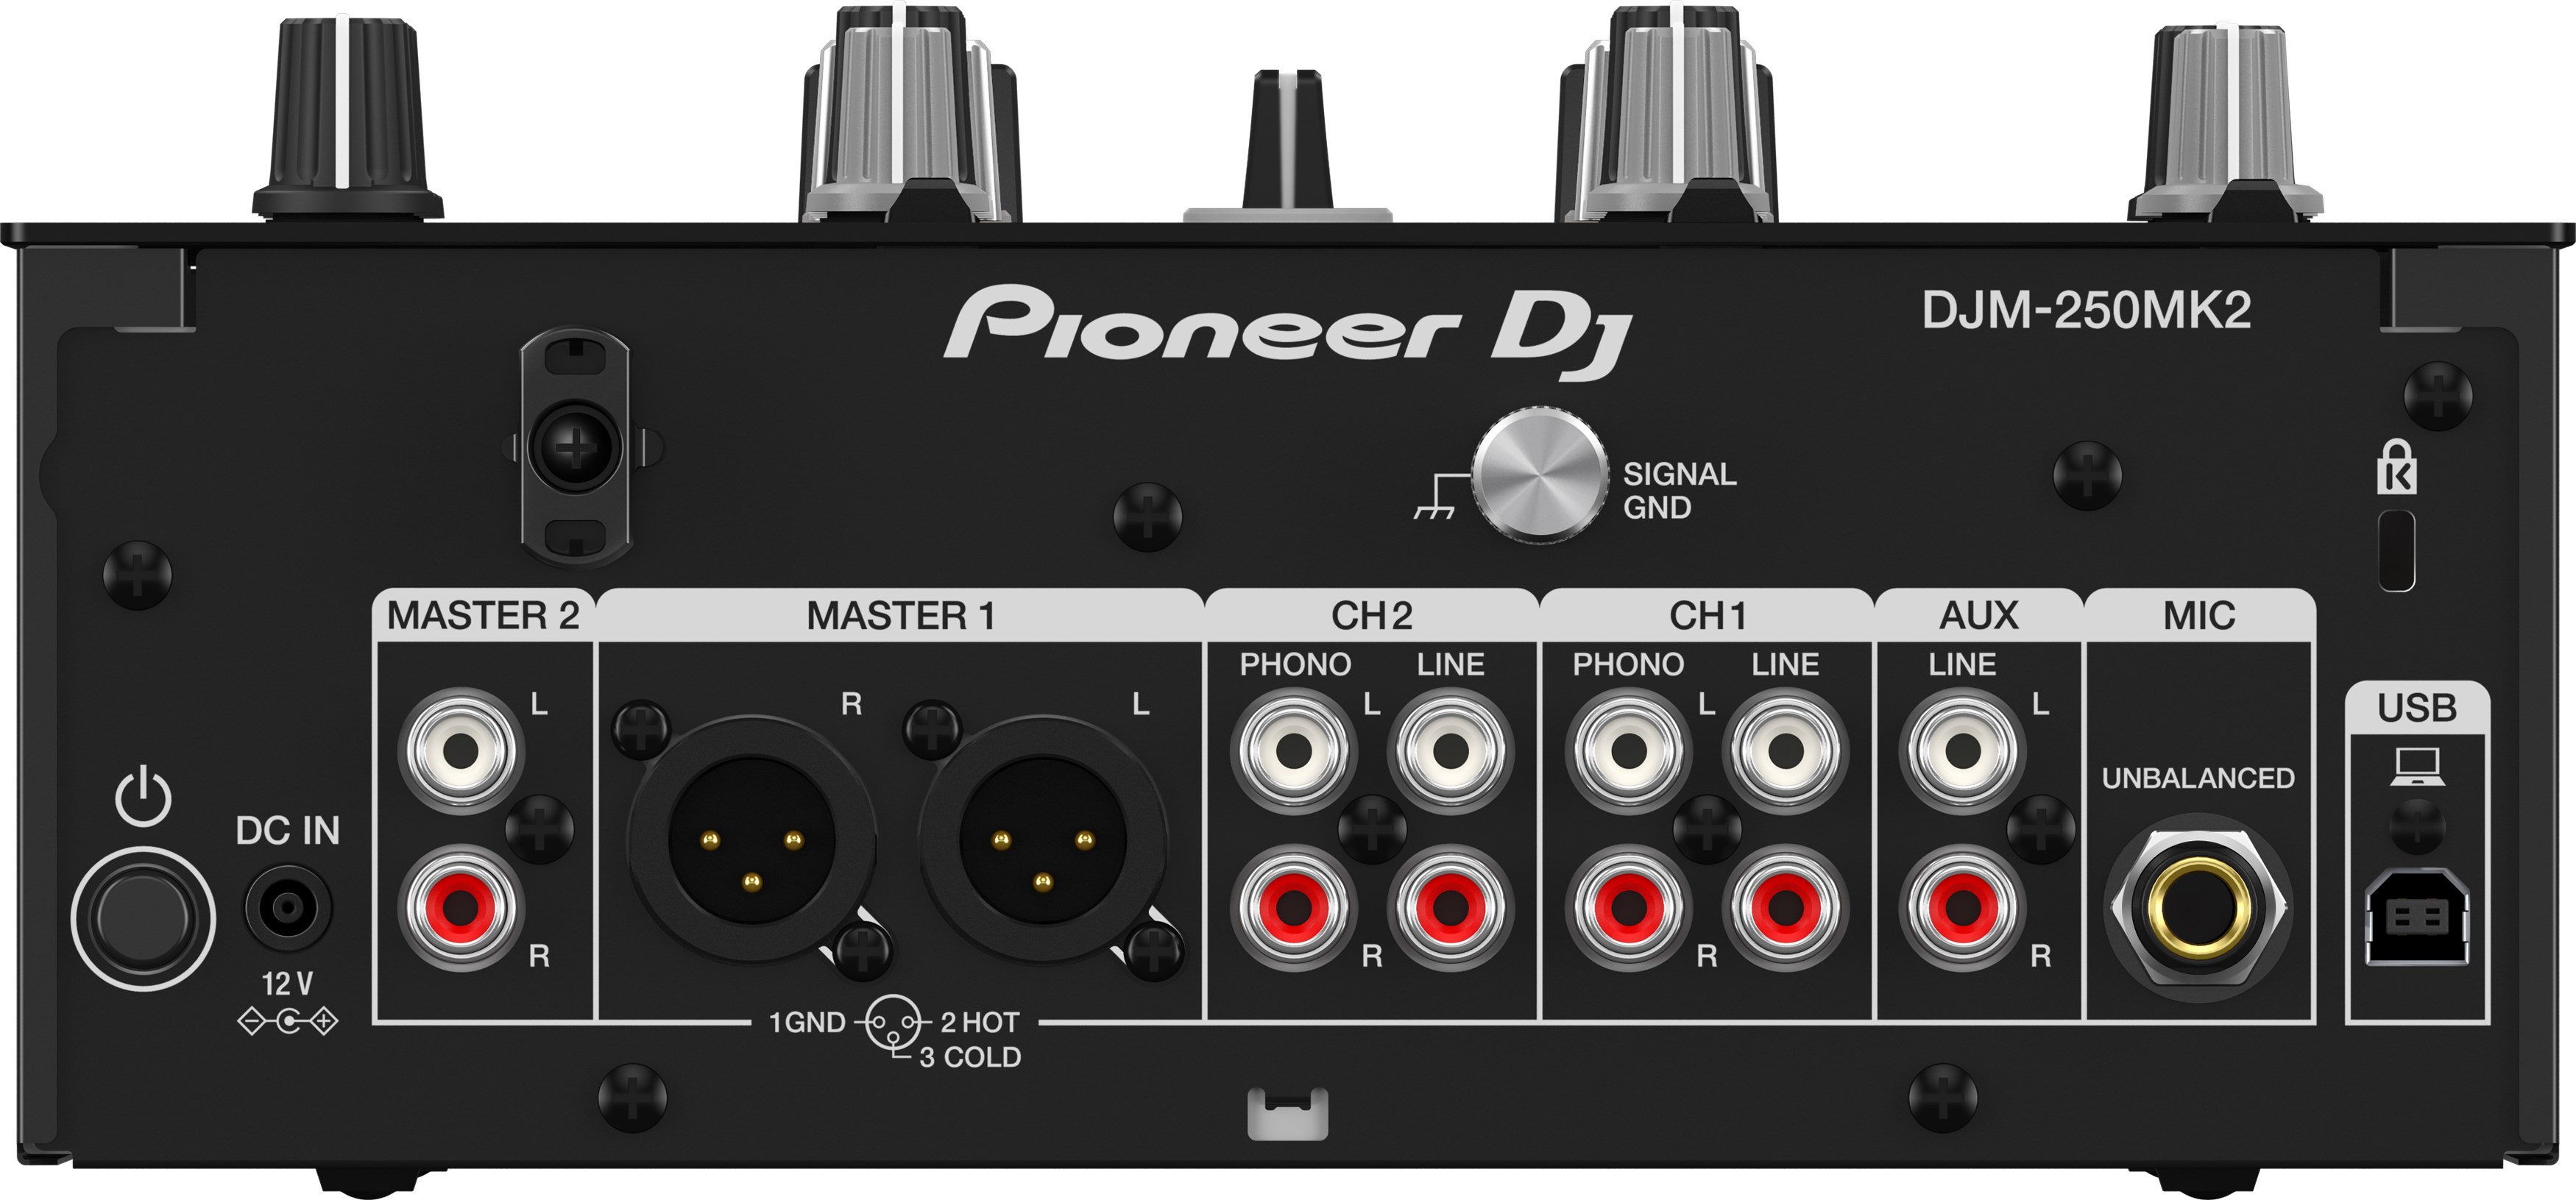 Pioneer Dj Djm-250mk2 - Mixer DJ - Variation 1